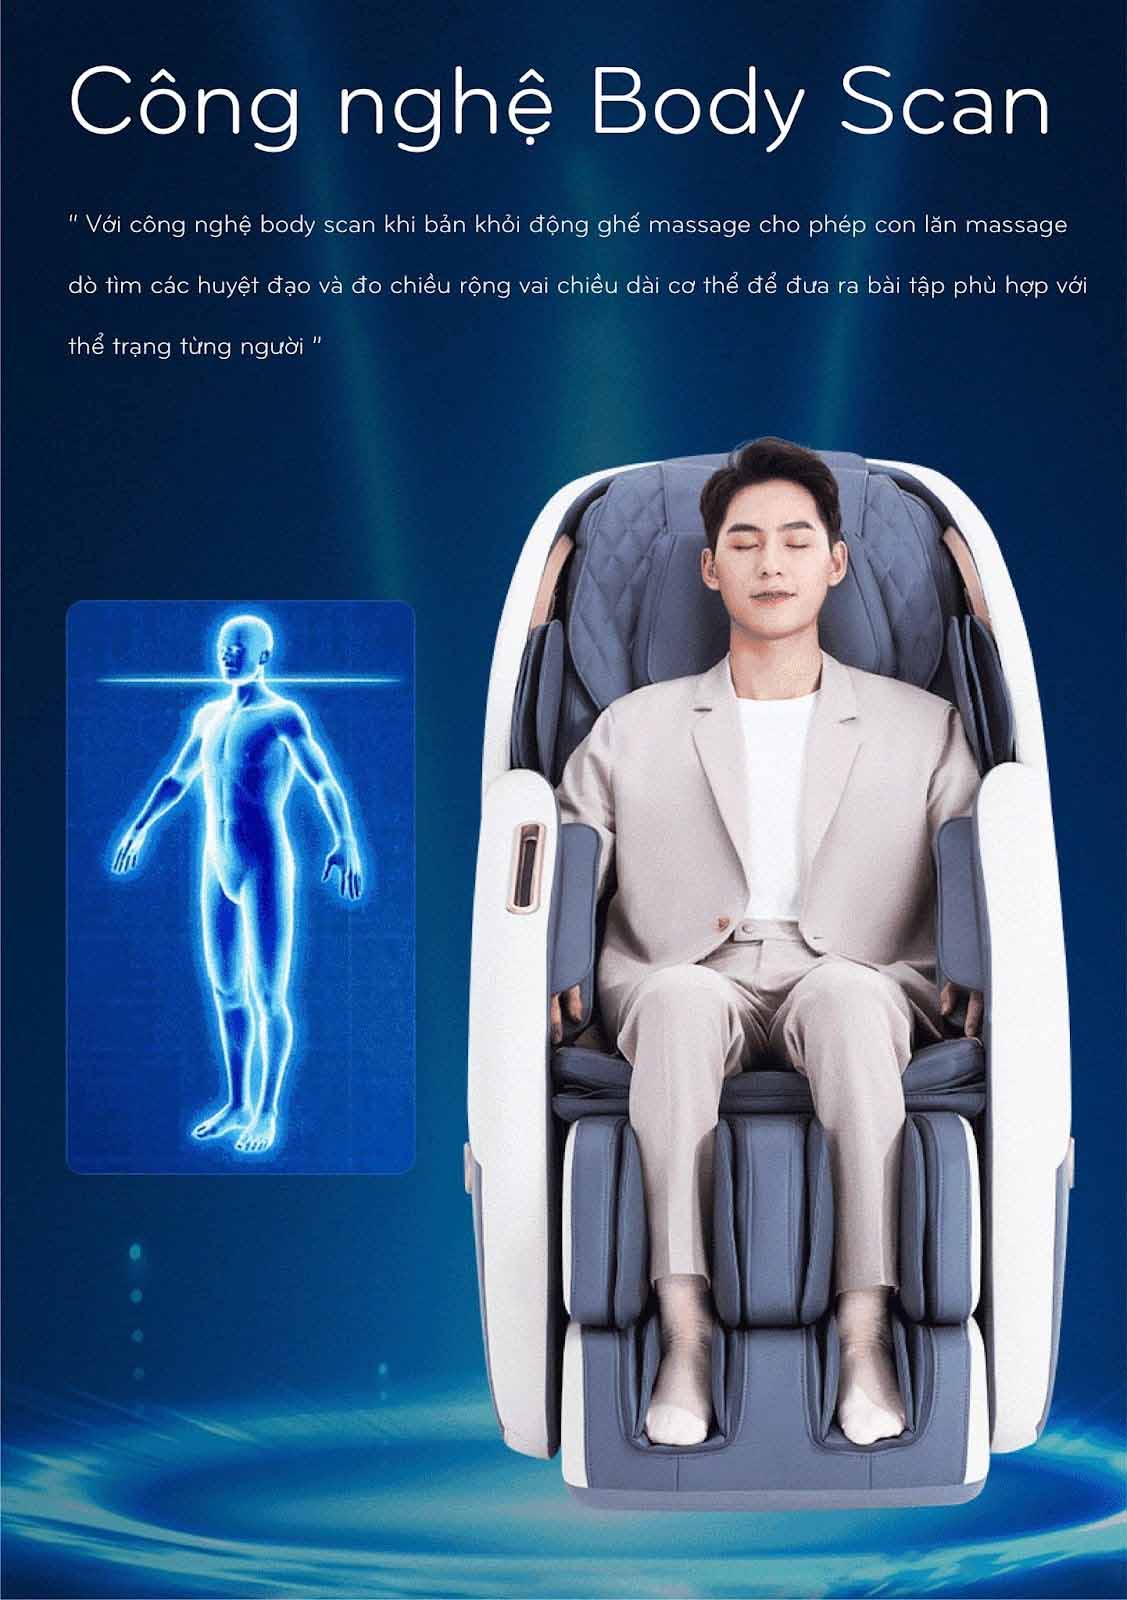 Chế độ body scan ghế massage Okinawa INC - 550